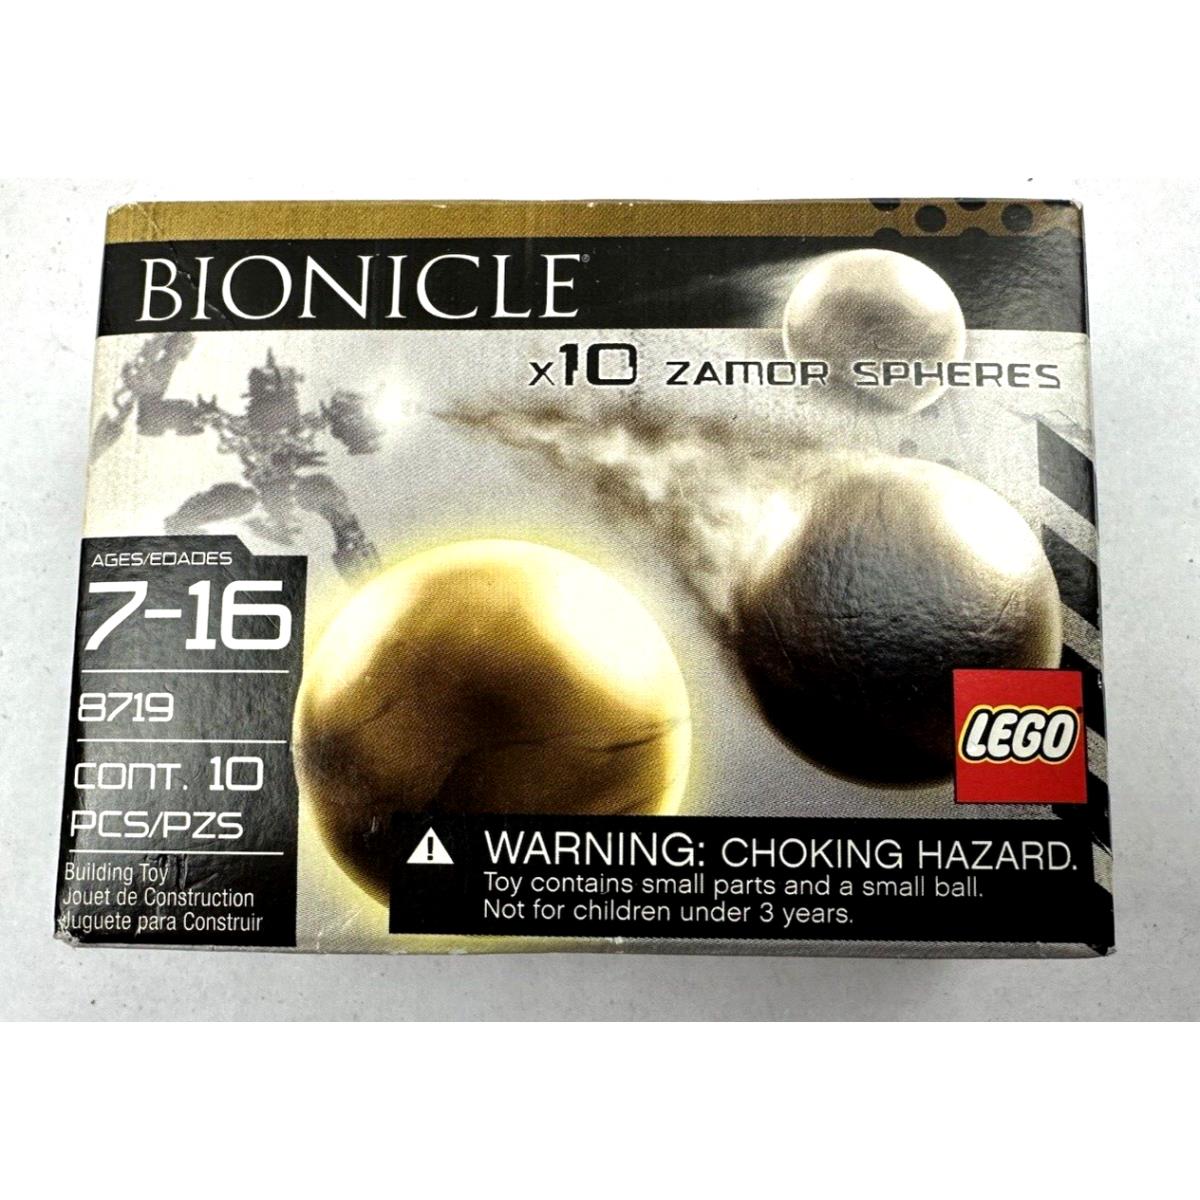 8719 Zamor Spheres Lego Bionicle Legos Set